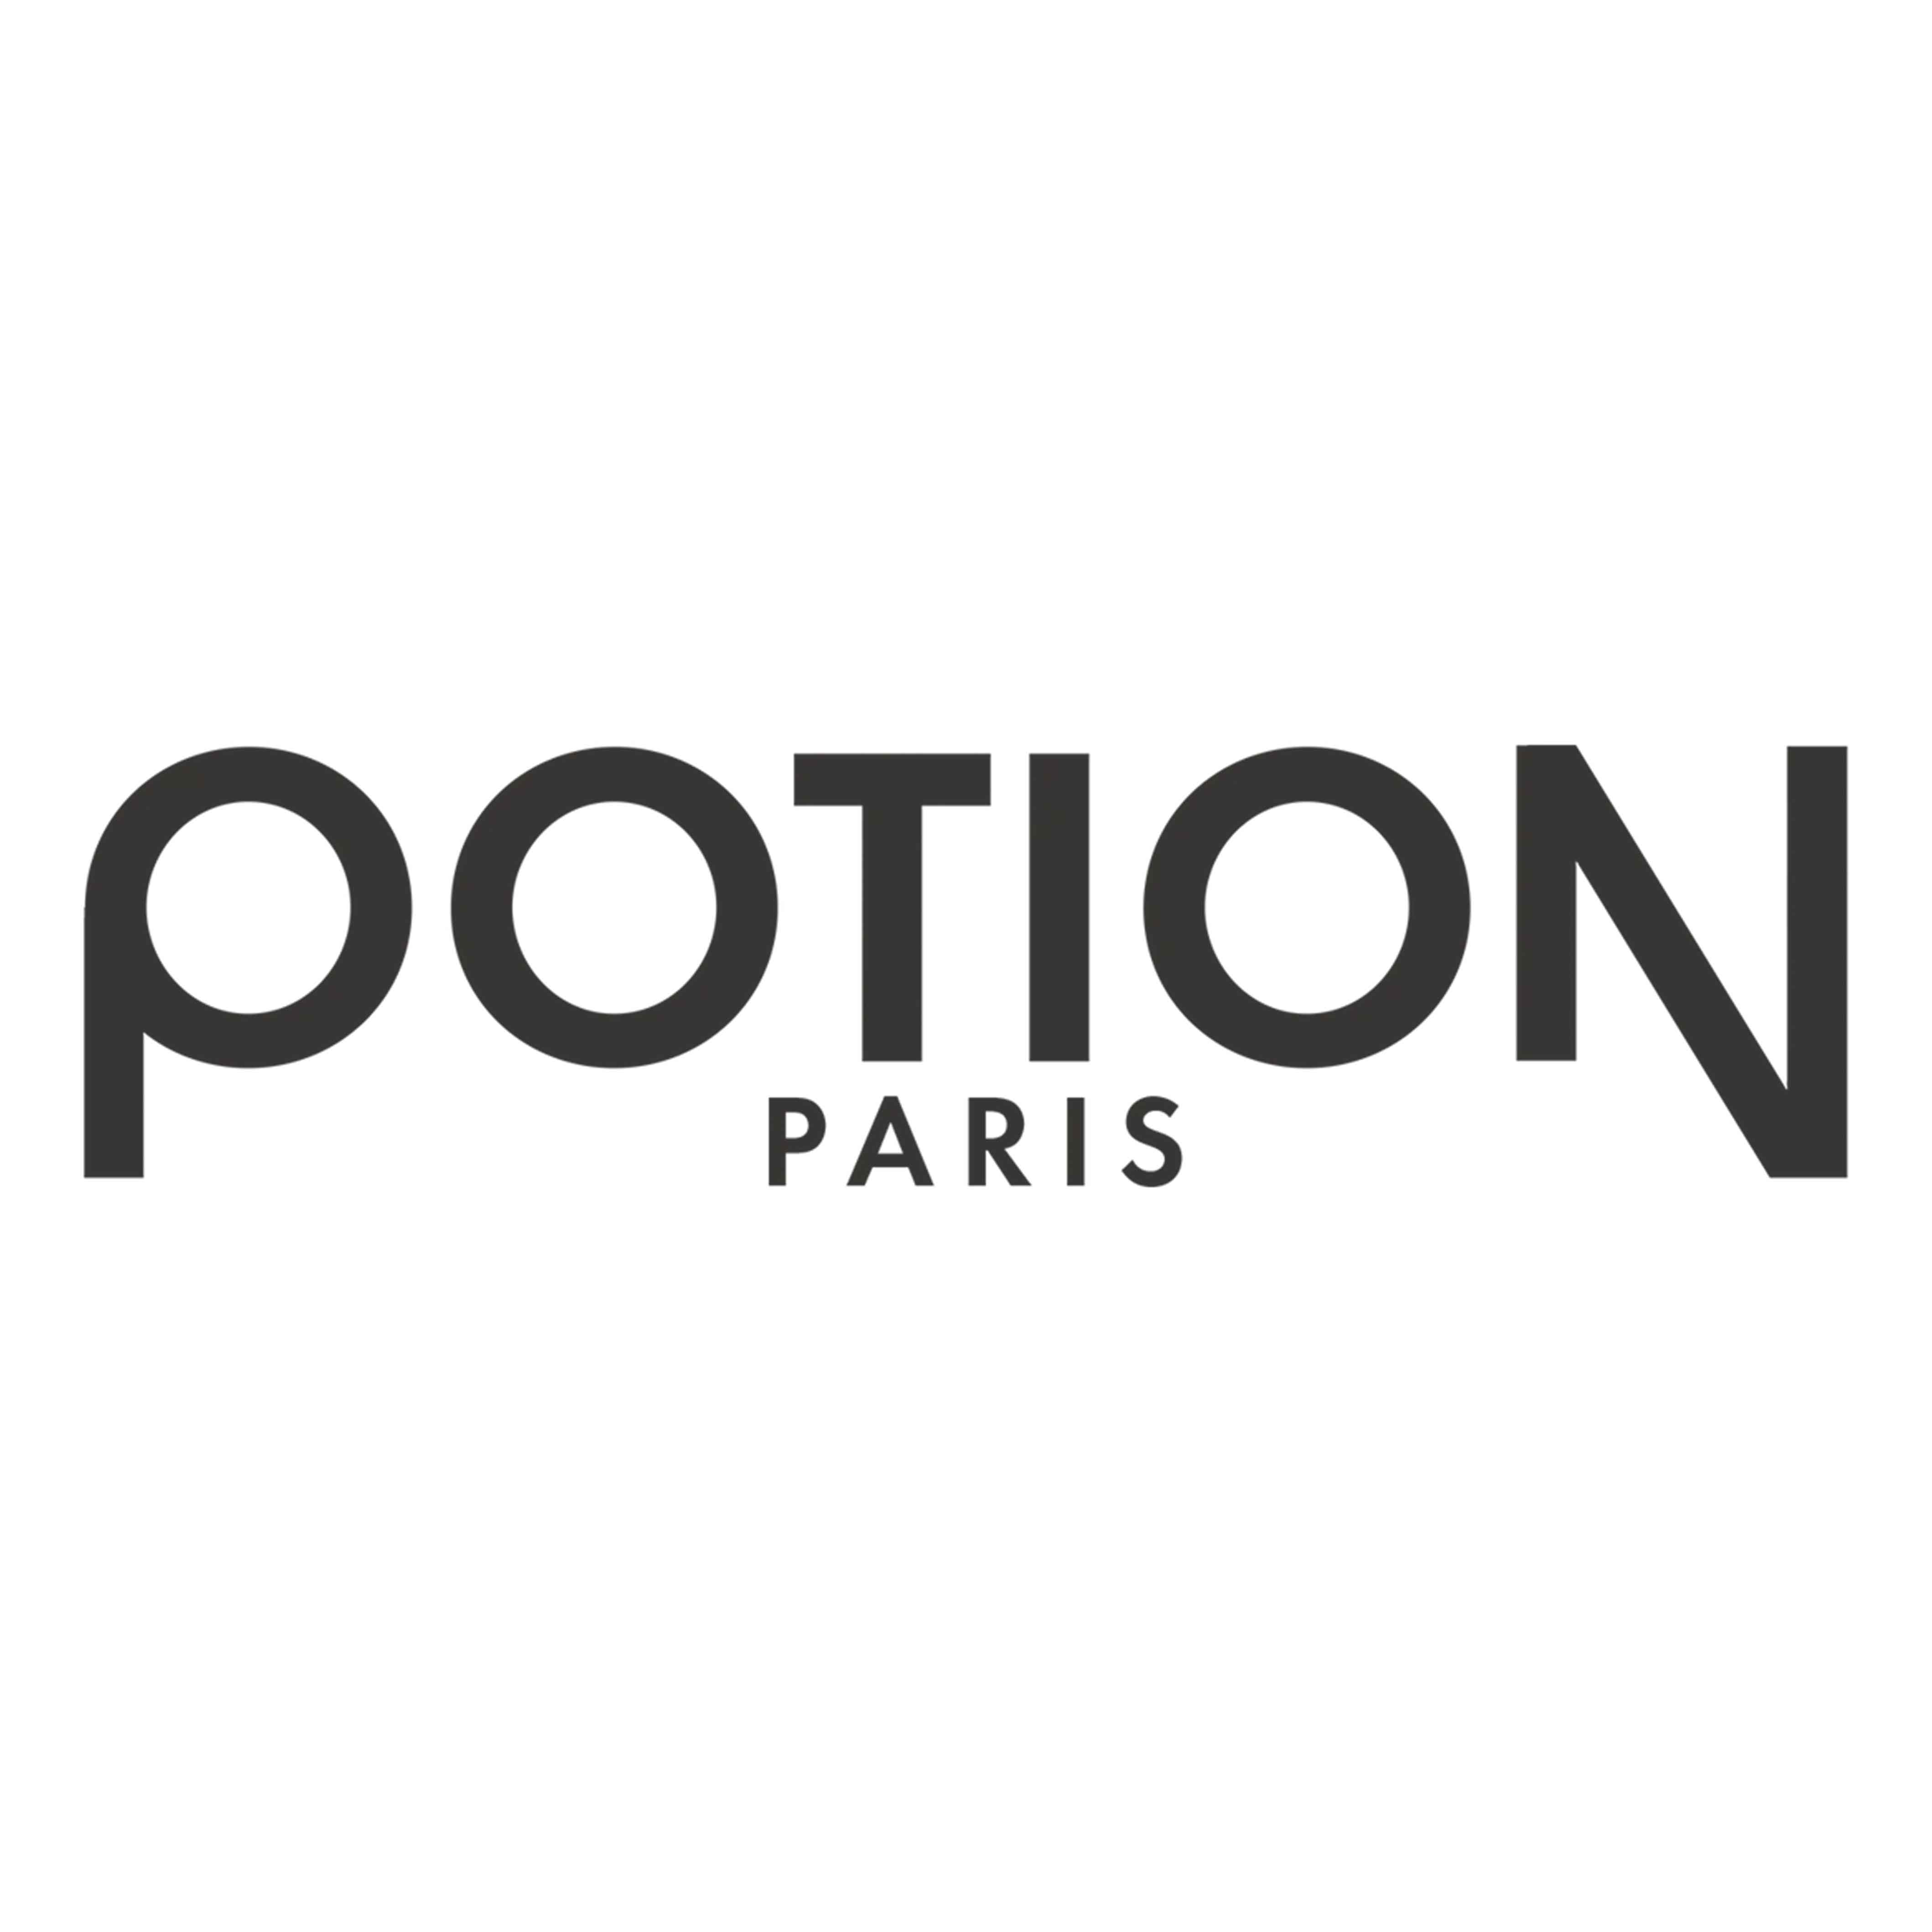 Potion Paris coupon codes